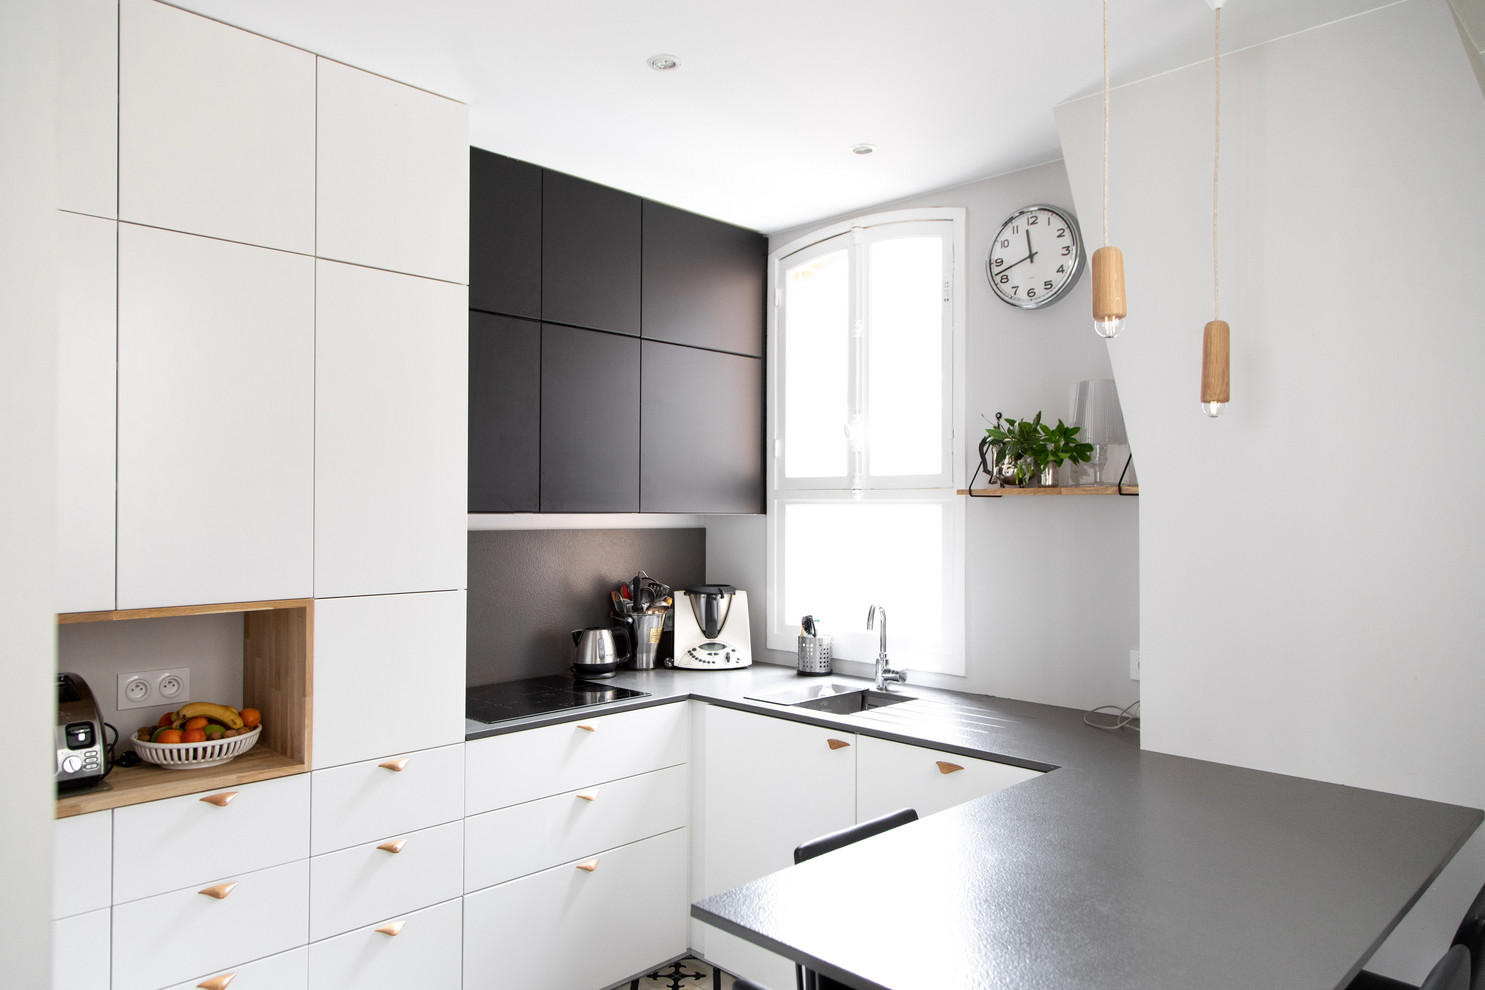 18-Minimalist-Scandinavian-Kitchen-Designs-That-Will-Brighten-Your-Day-18.jpg